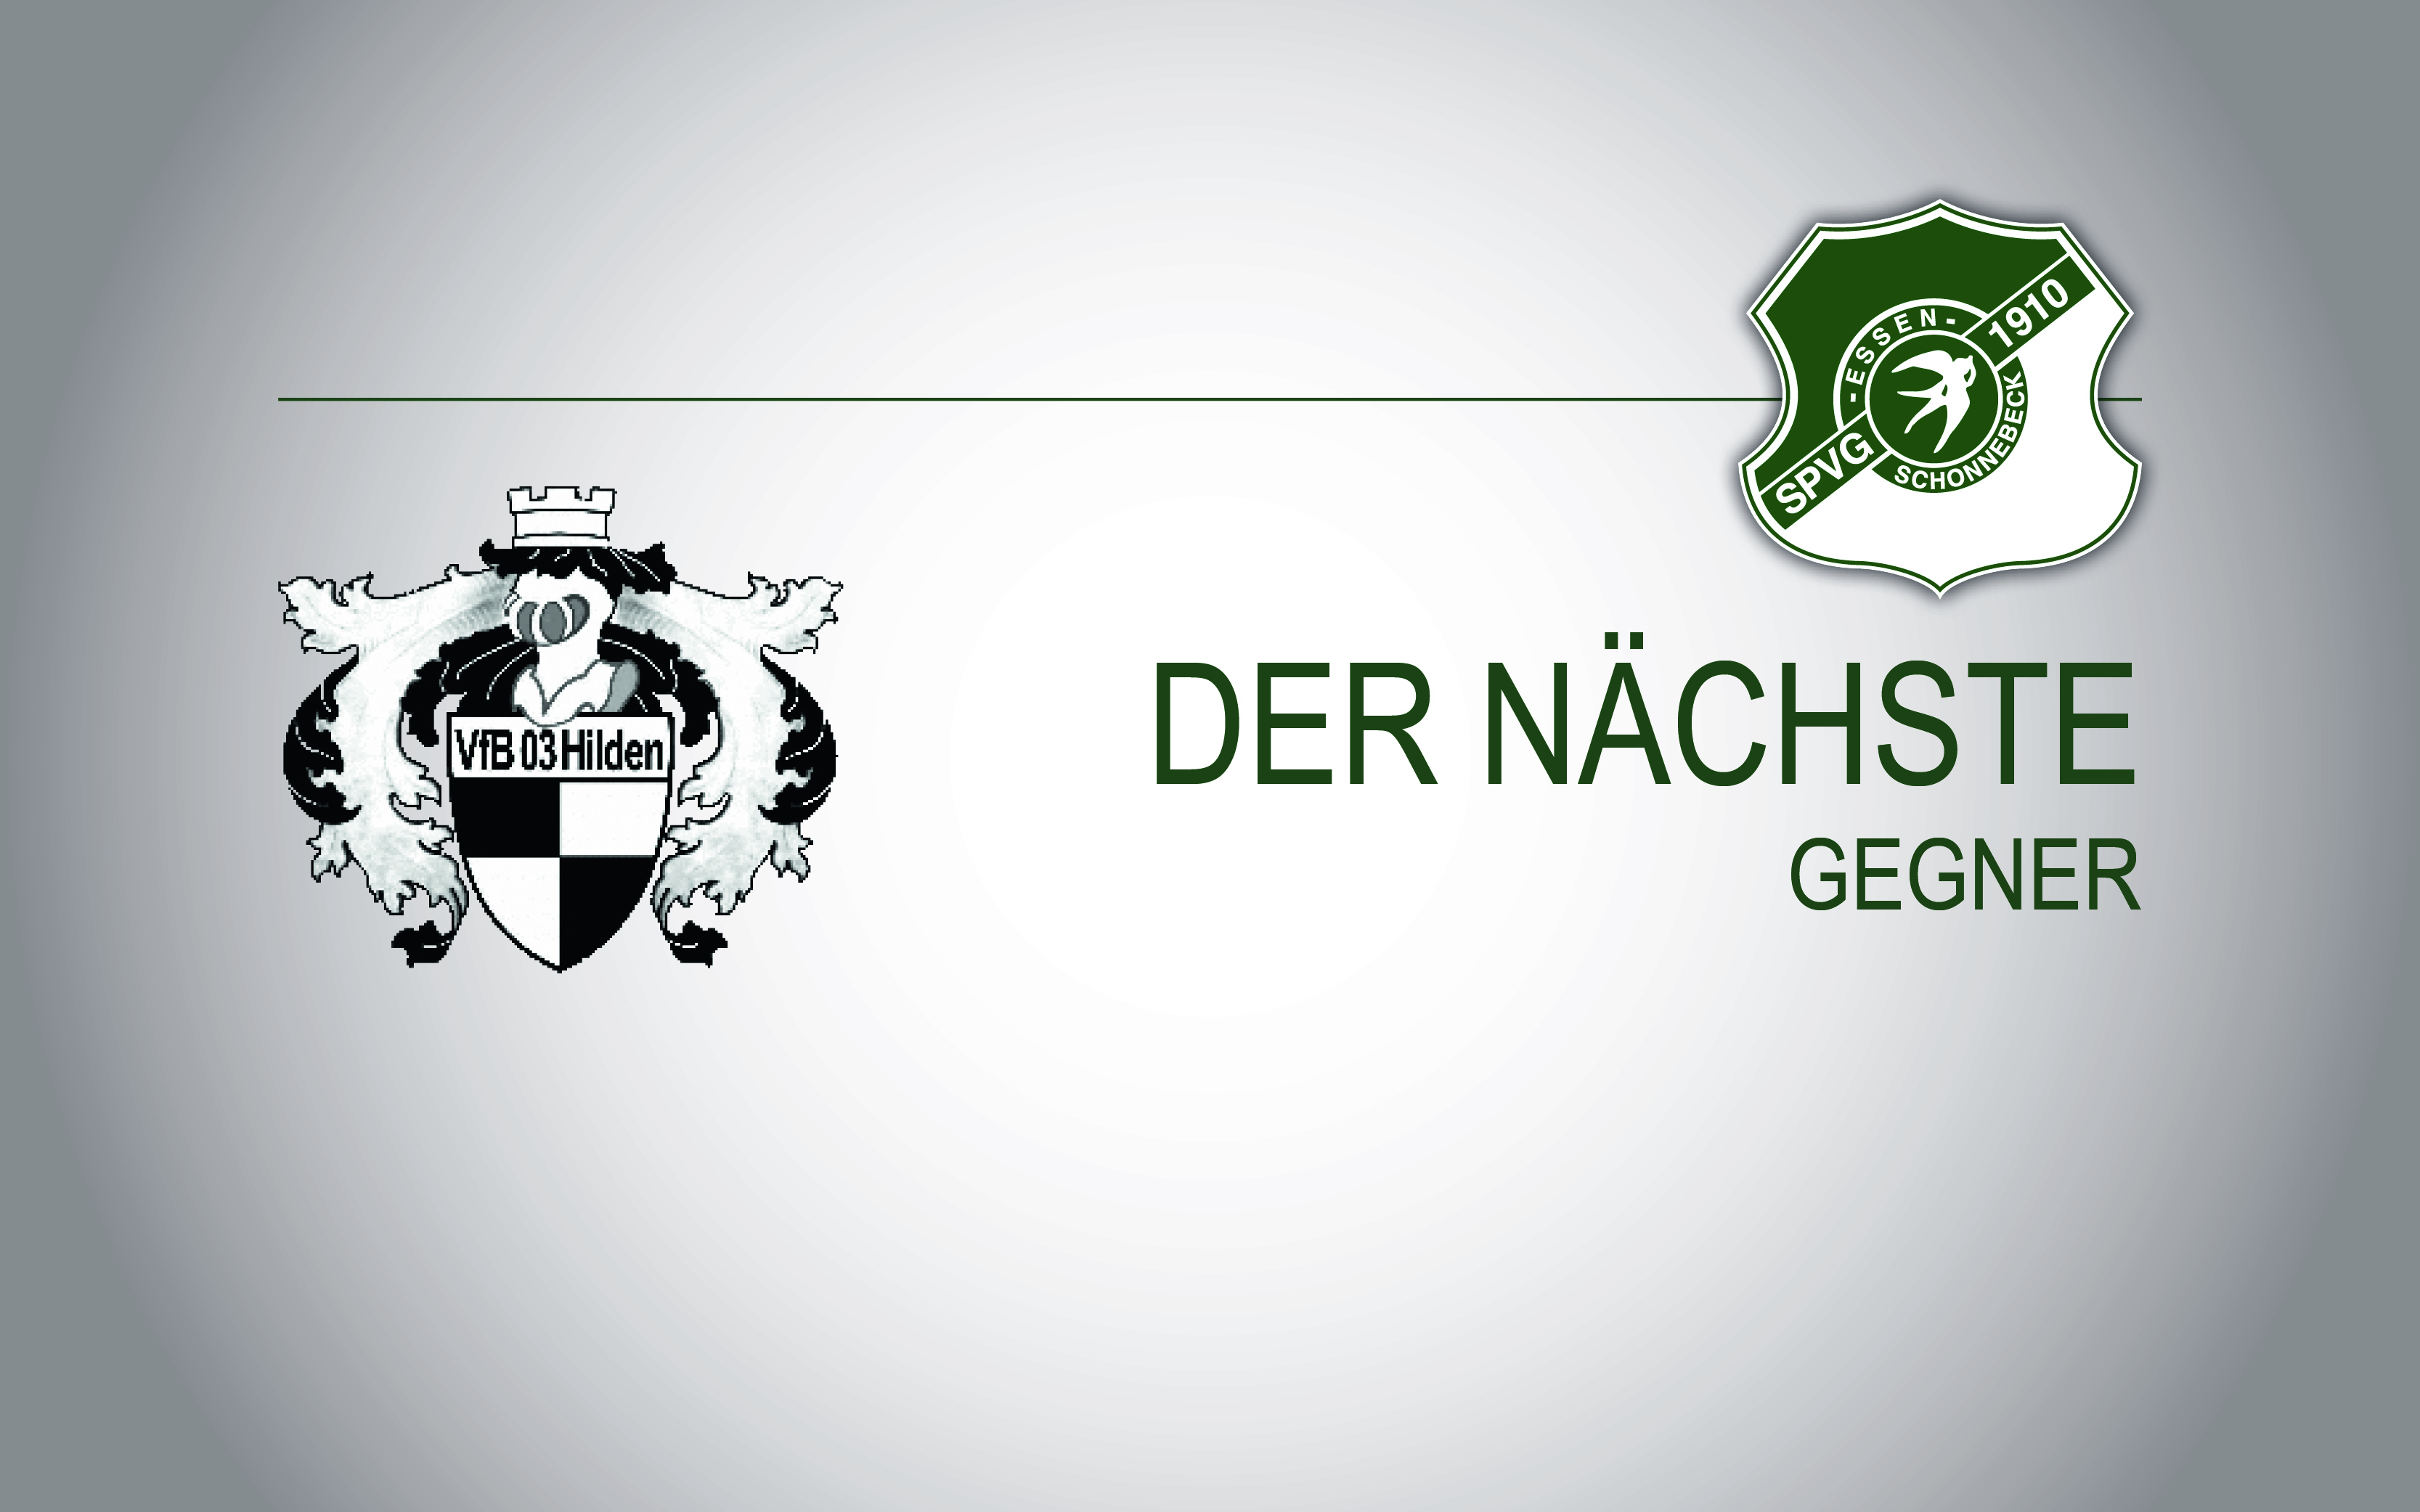 Der nächste Gegner: VfB 03 Hilden post thumbnail image